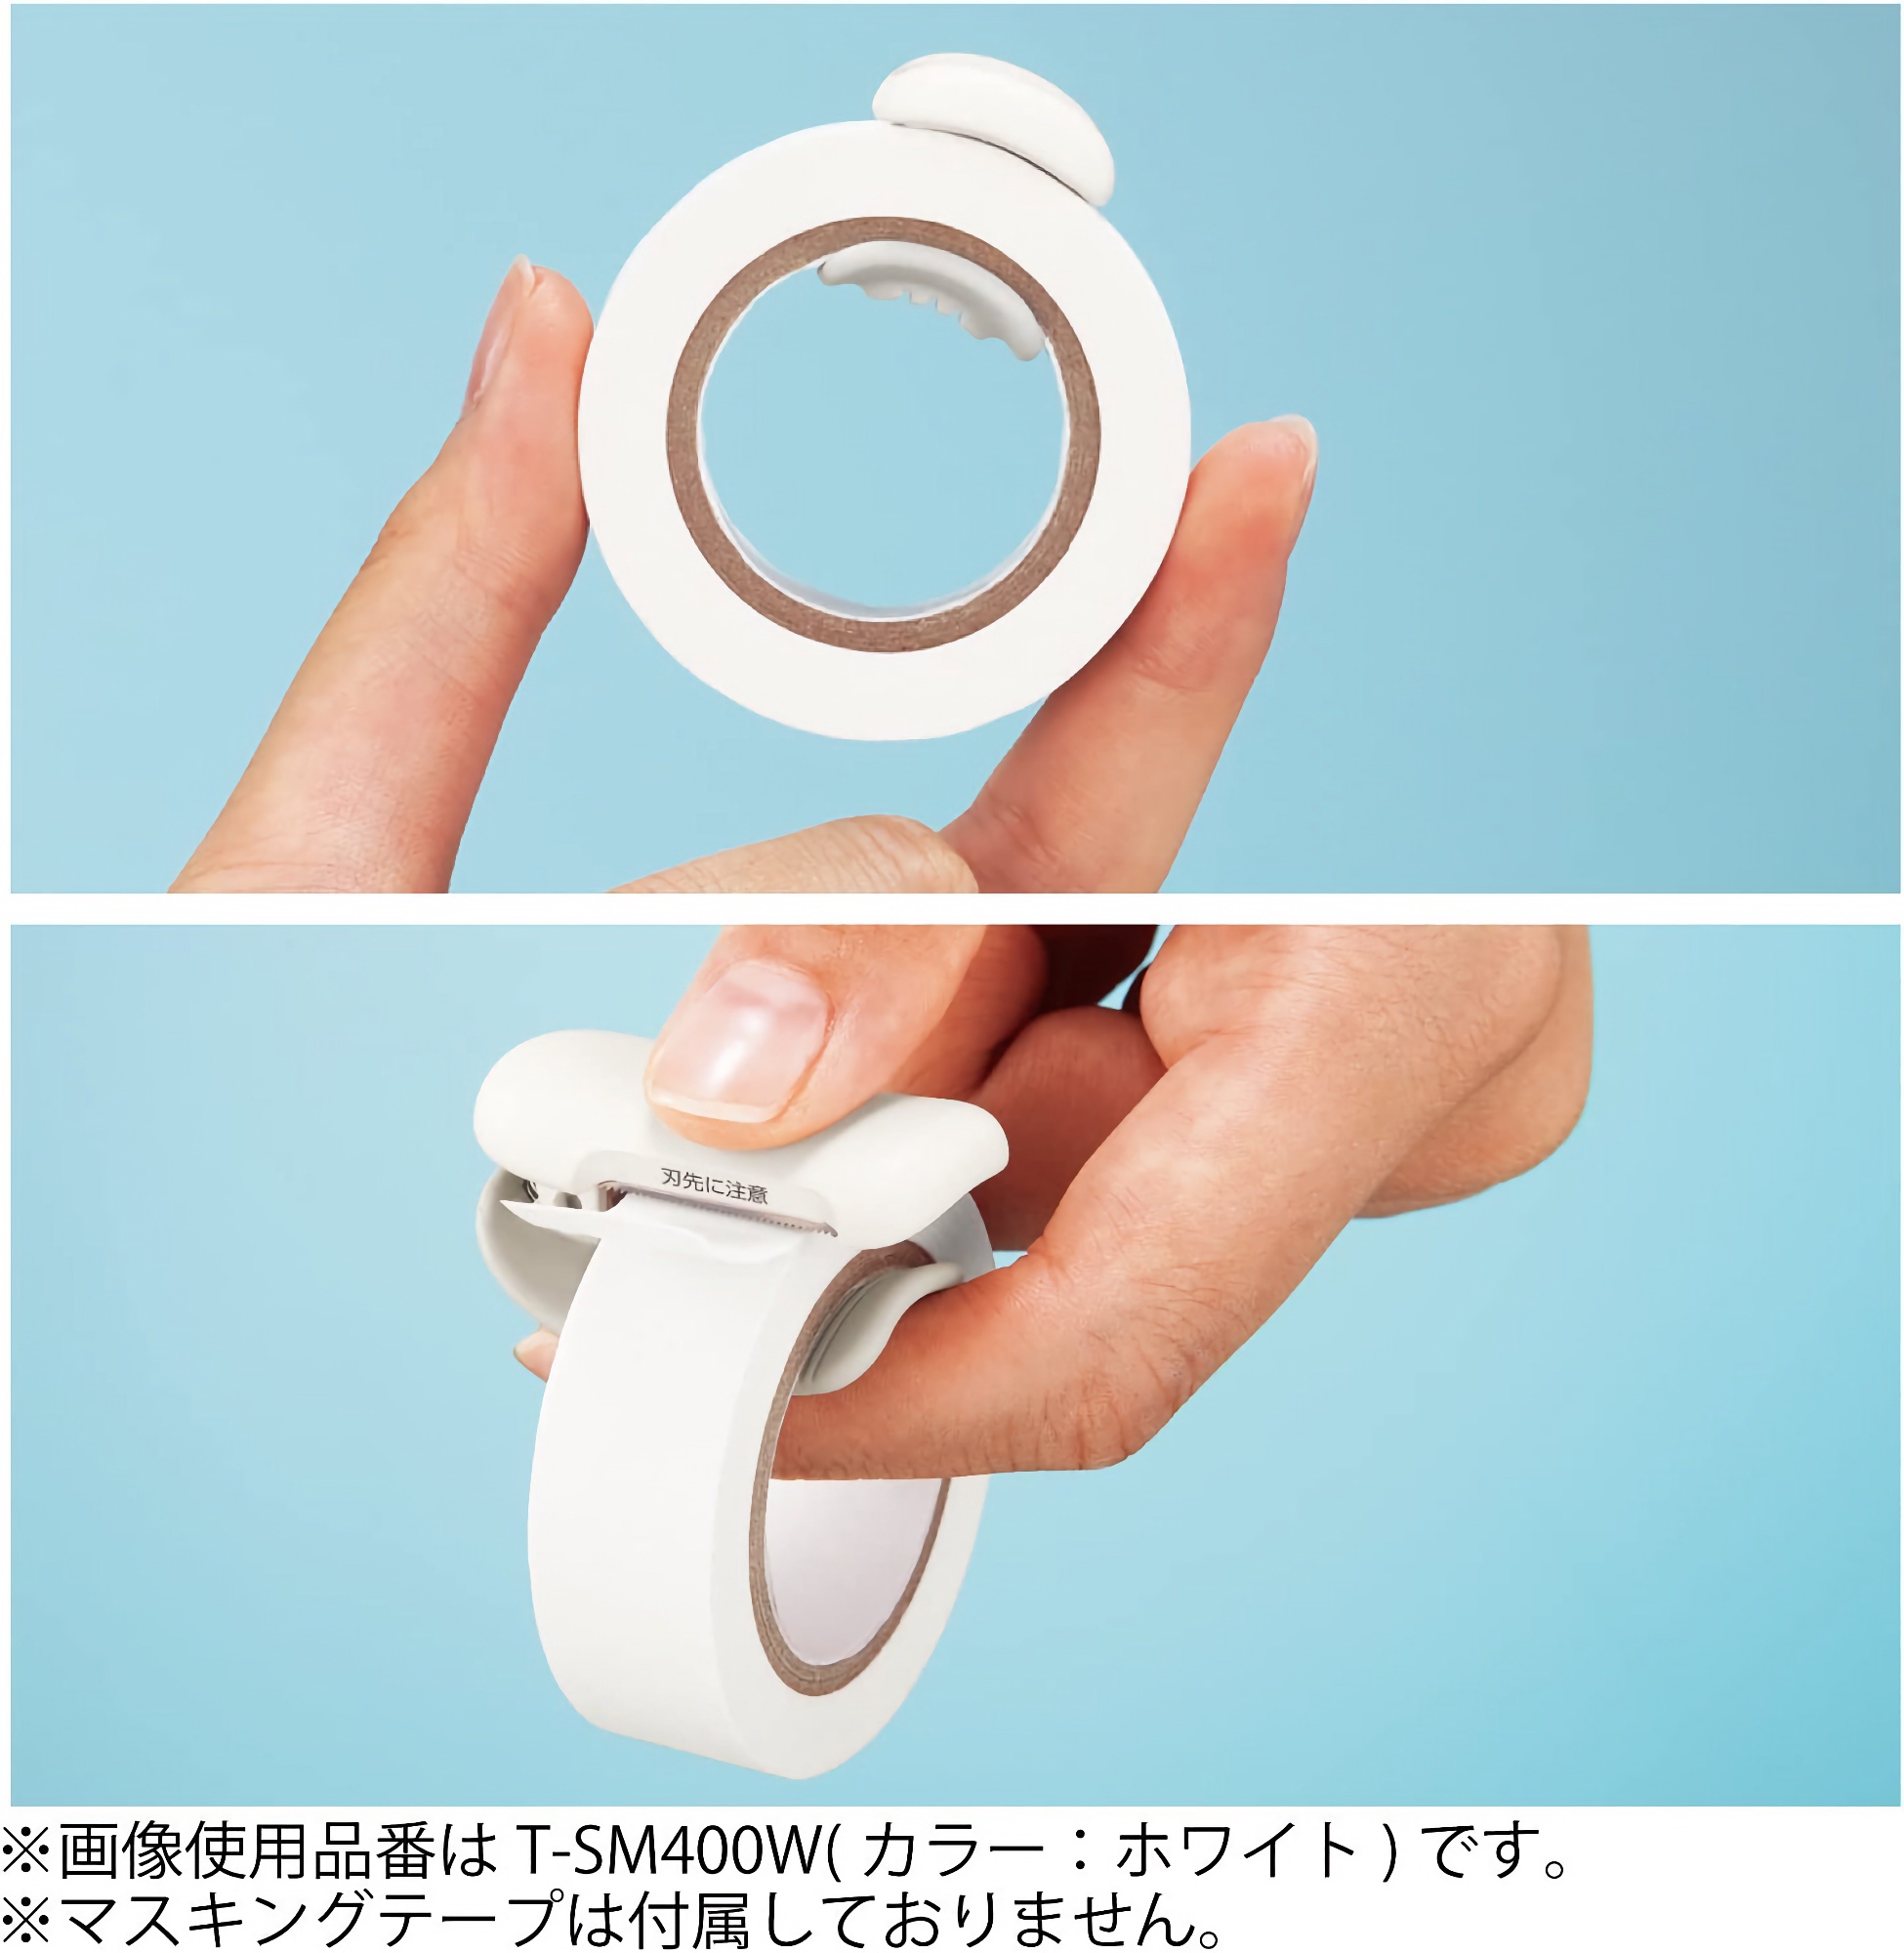 Kokuyo Karu Cut Washi Tape Cutter 20-25 mm White